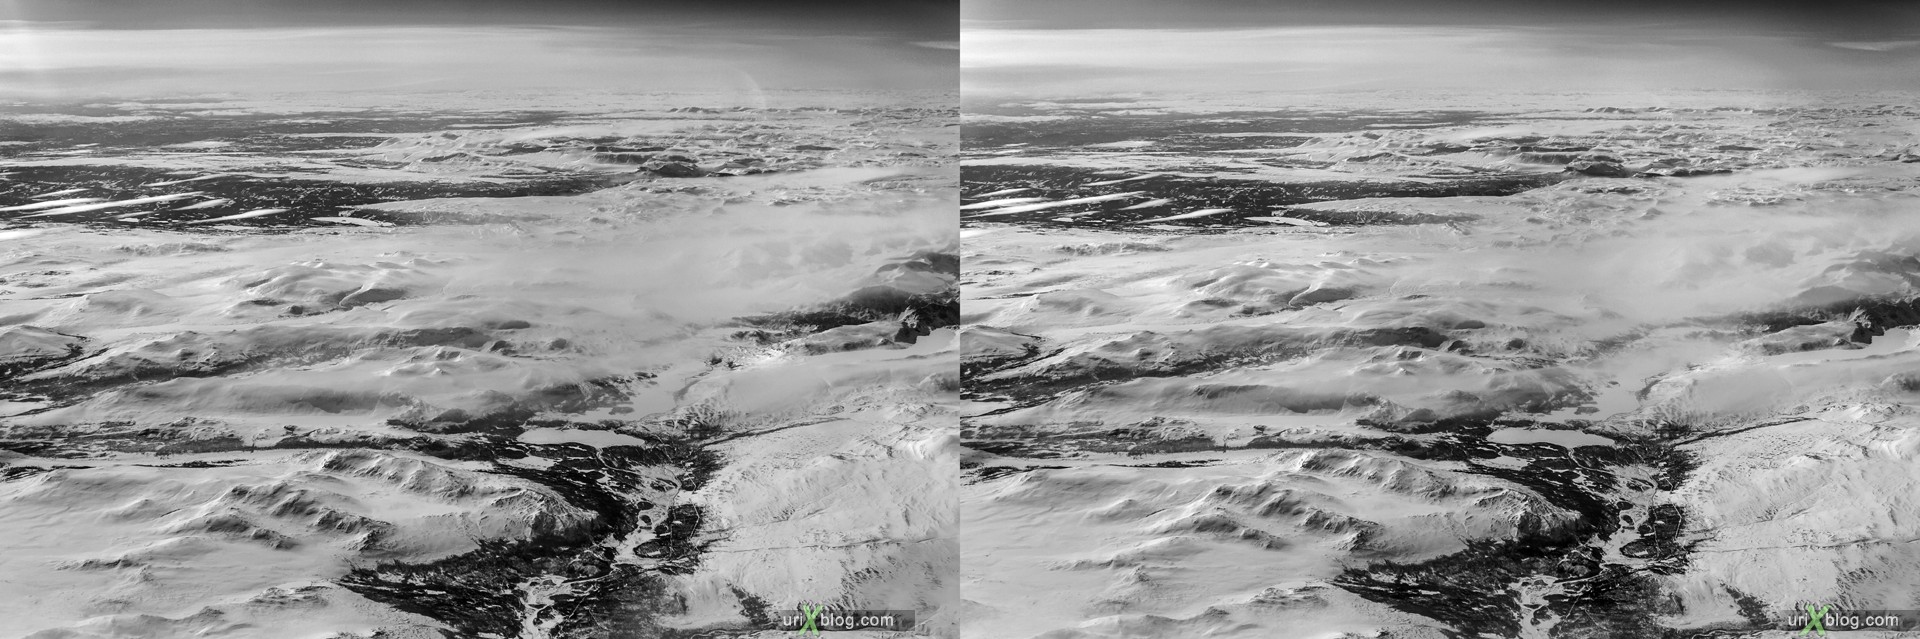 2013, Норвегия, горы, панорама, самолёт, чёрно-белое, чб, снег, лёд, облака, горизонт, 3D, перекрёстные стереопары, стерео, стереопара, стереопары